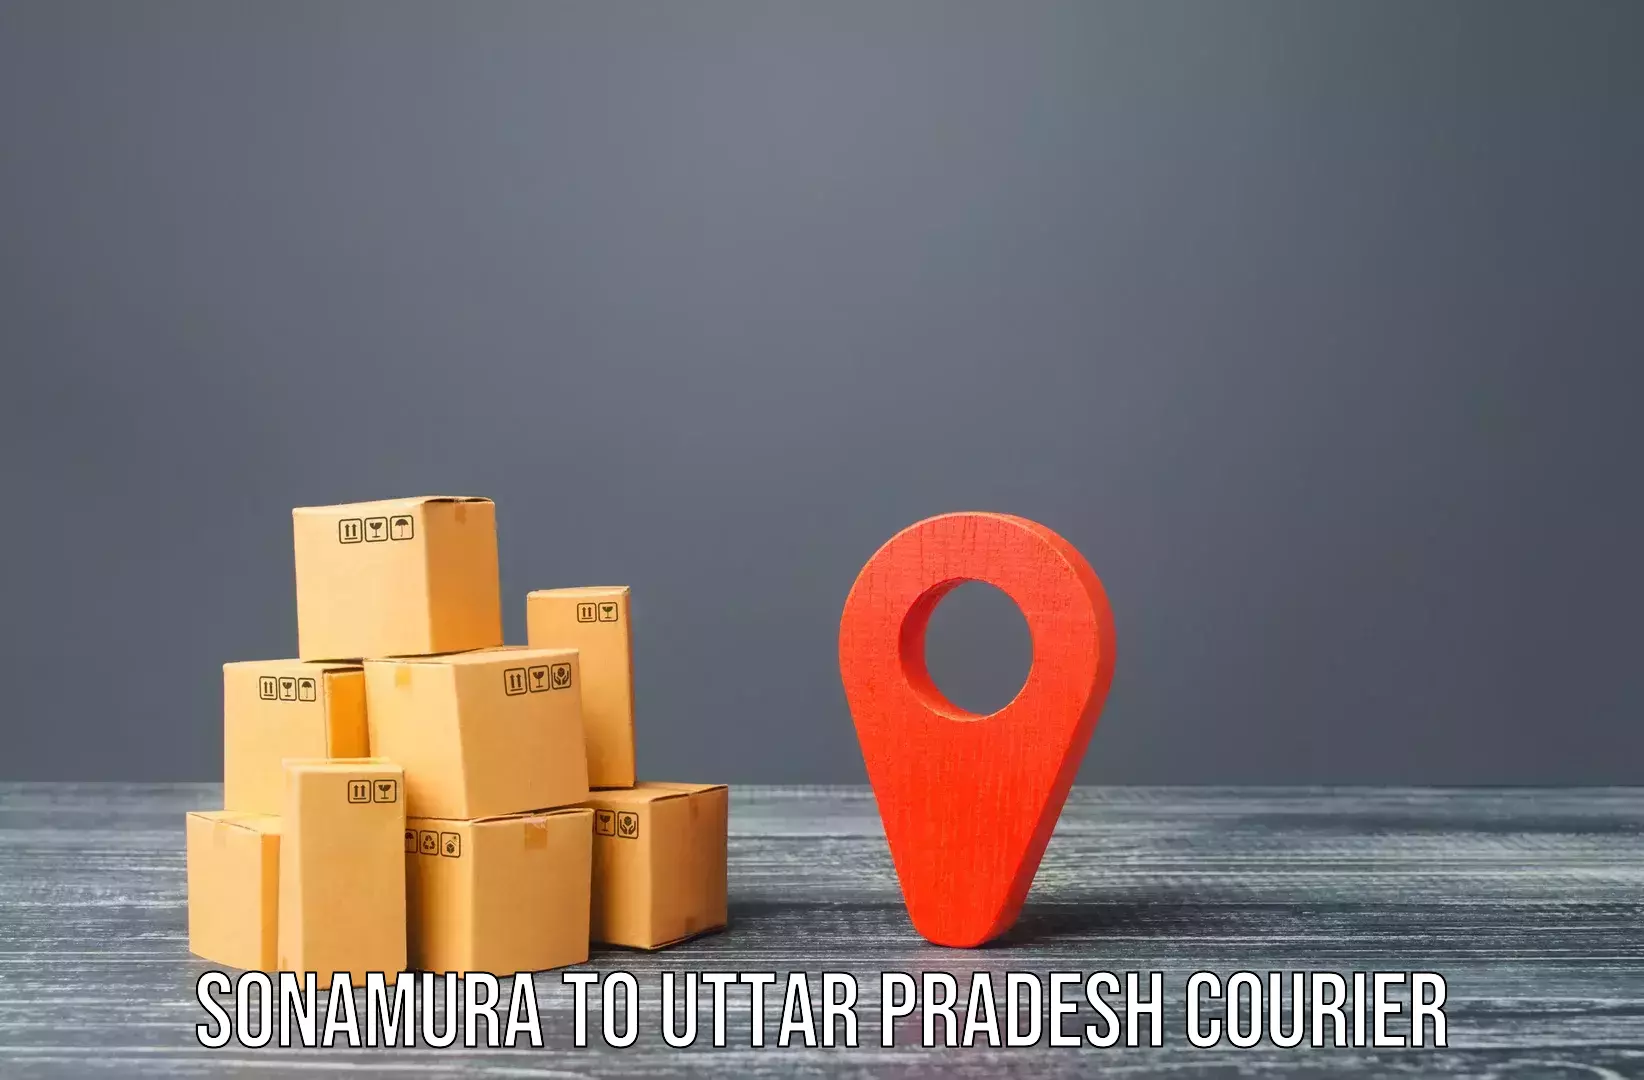 Furniture delivery service Sonamura to Aligarh